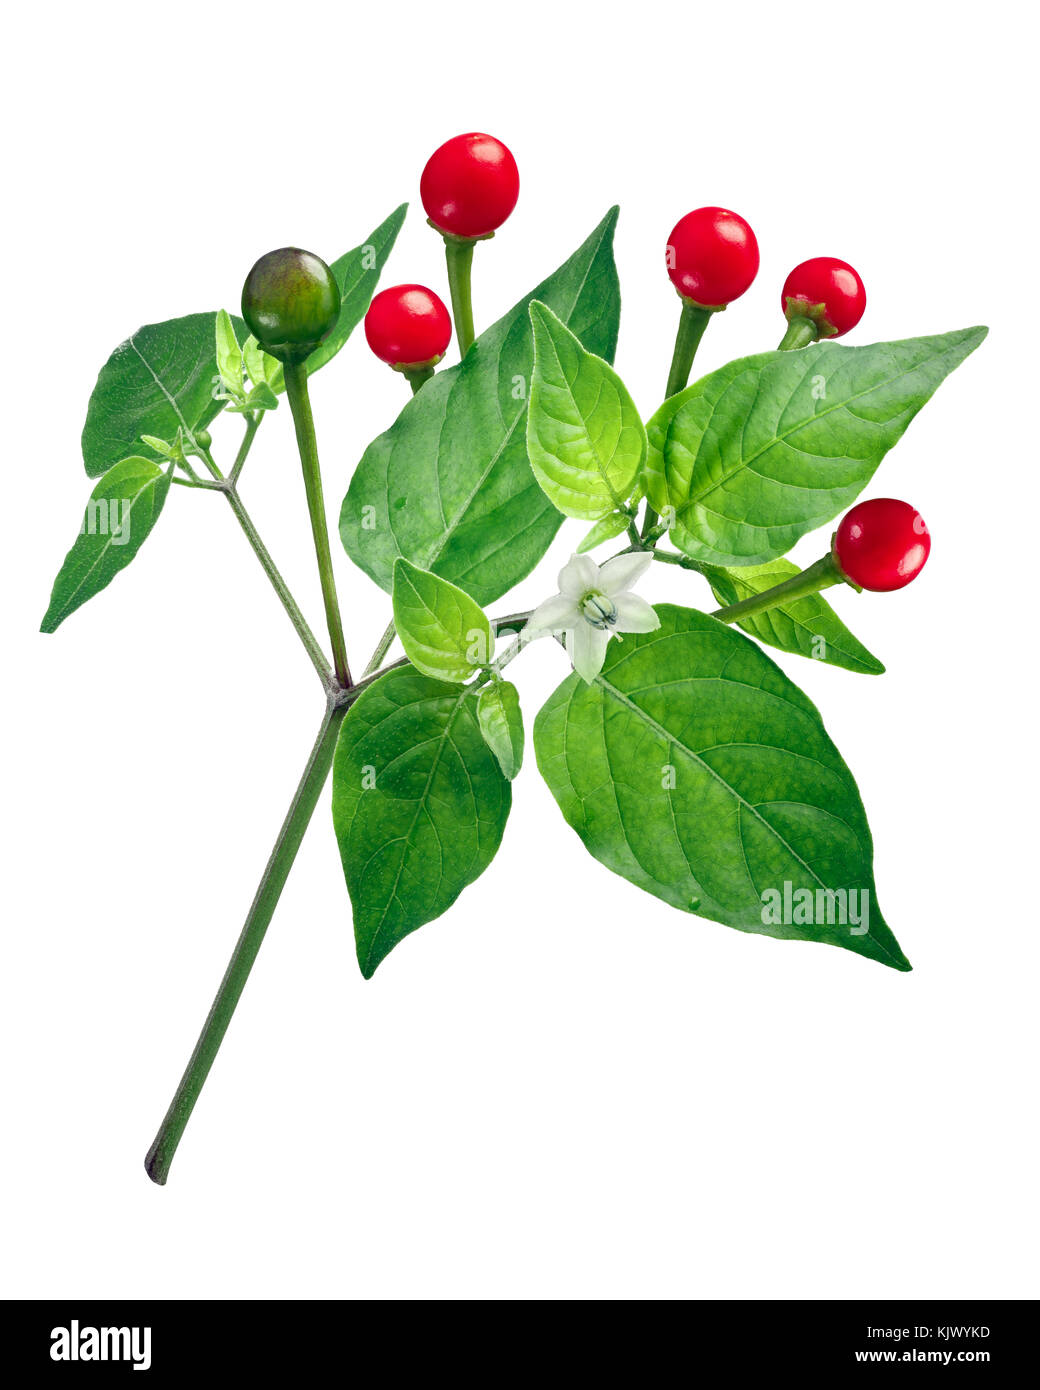 Chili Tepin ou Chiltepin poivron (Capsicum annuum var. glabriusculum), plante avec des fruits. Clipping path Banque D'Images